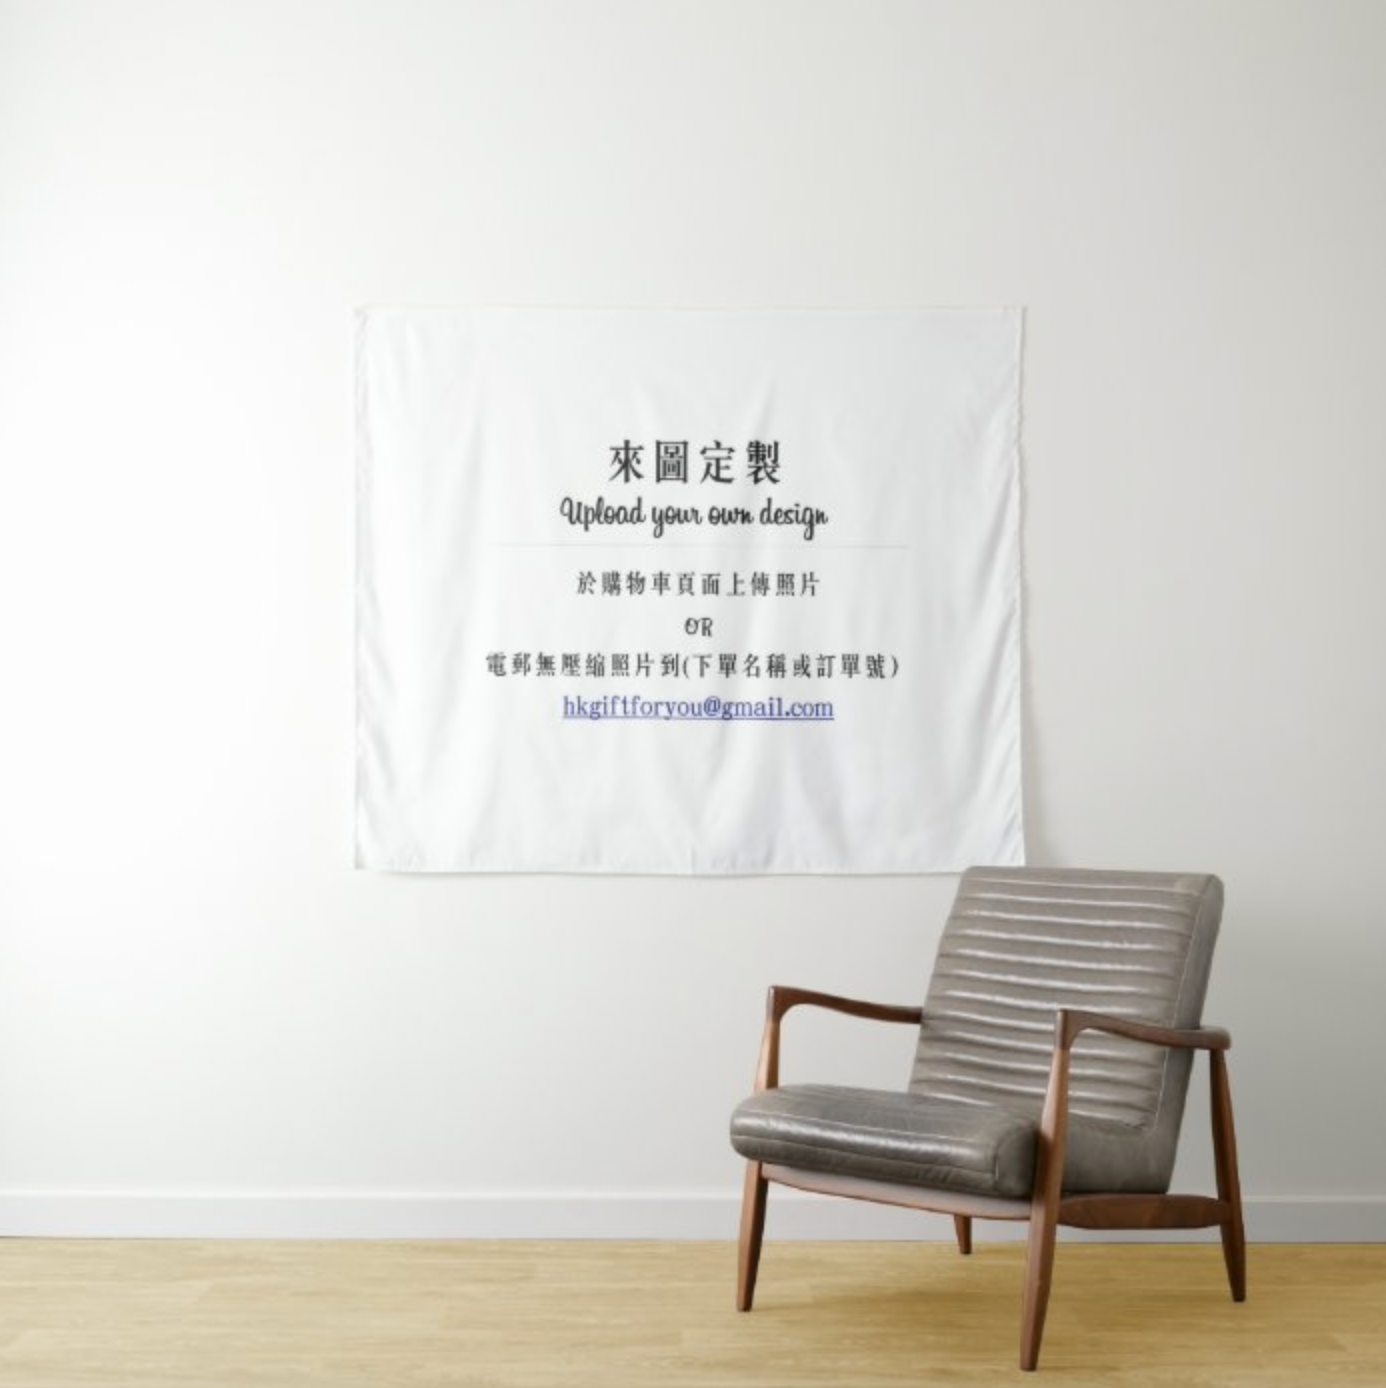 來圖定製照片掛布 Design Your Own Custom Wall Deco Tapestry - HKGIFTFORU